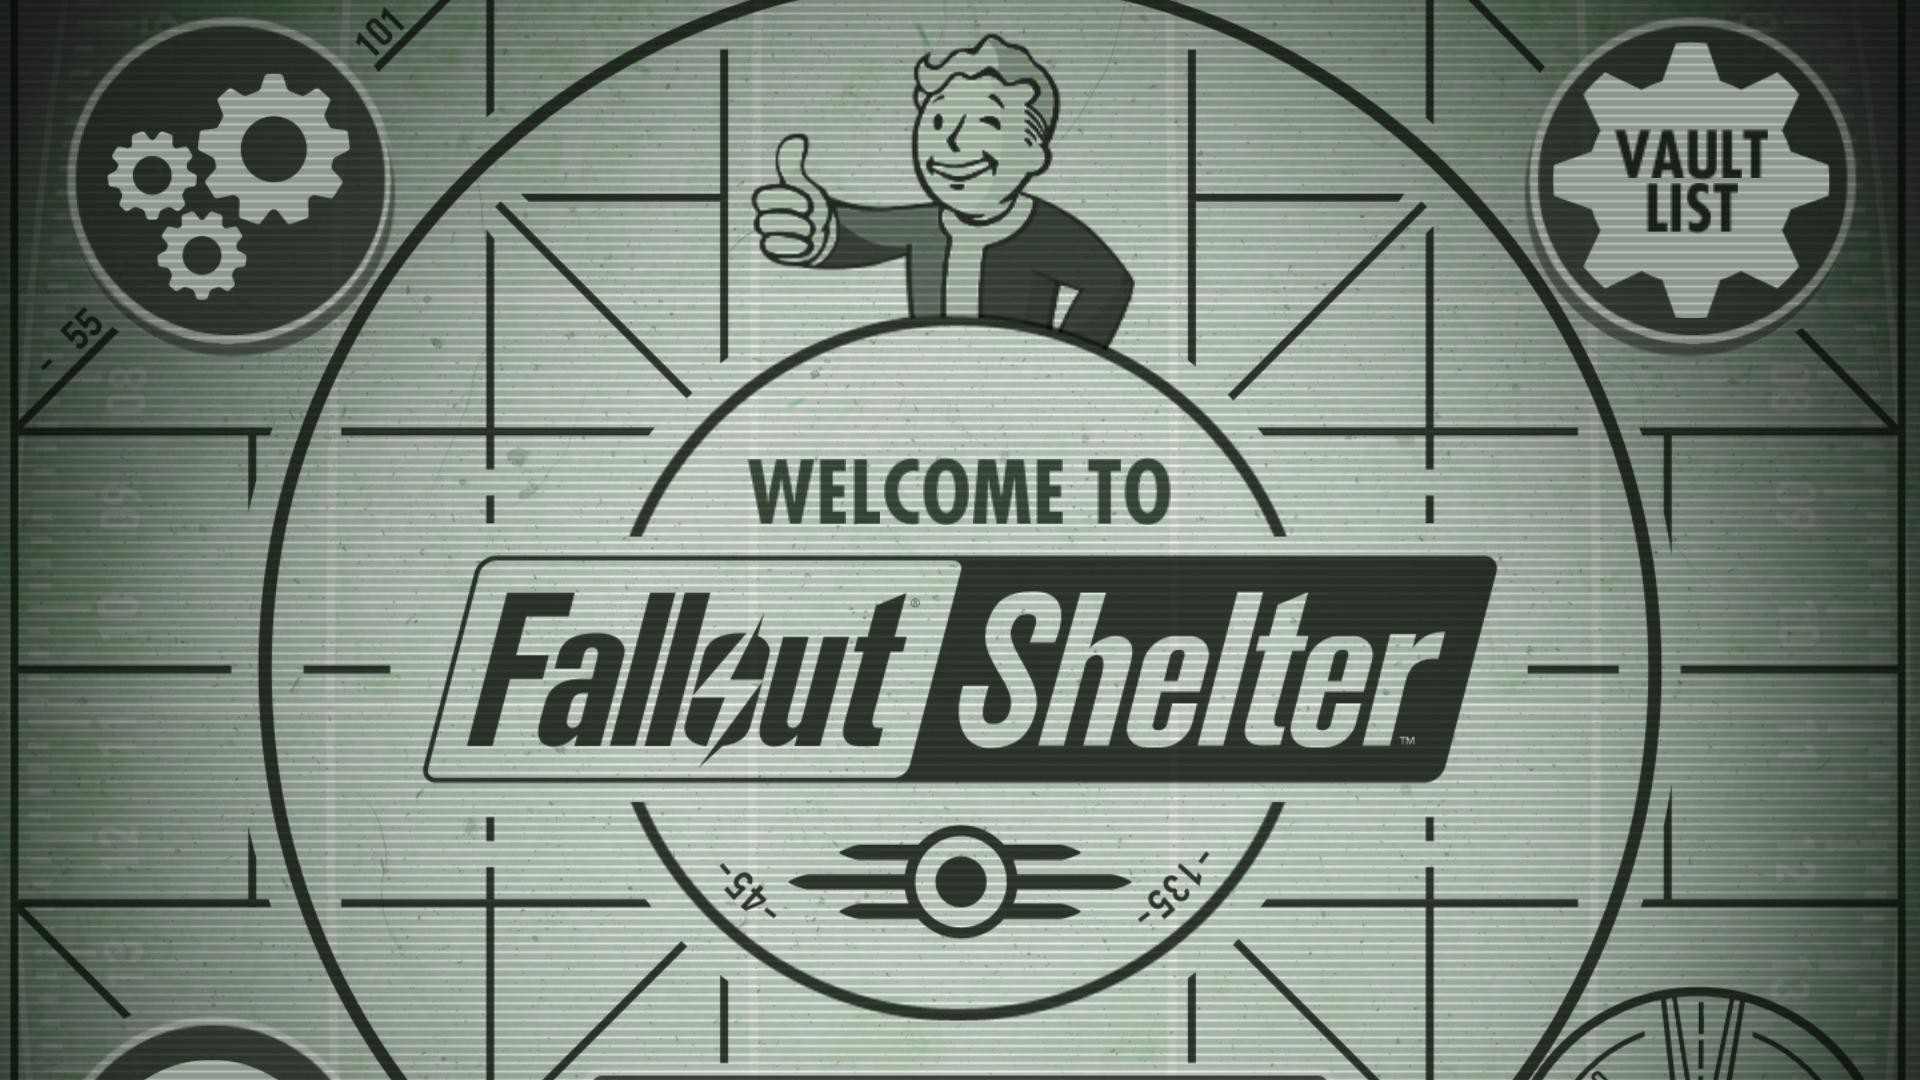 85 milhões de vaults já foram criadas em Fallout Shelter